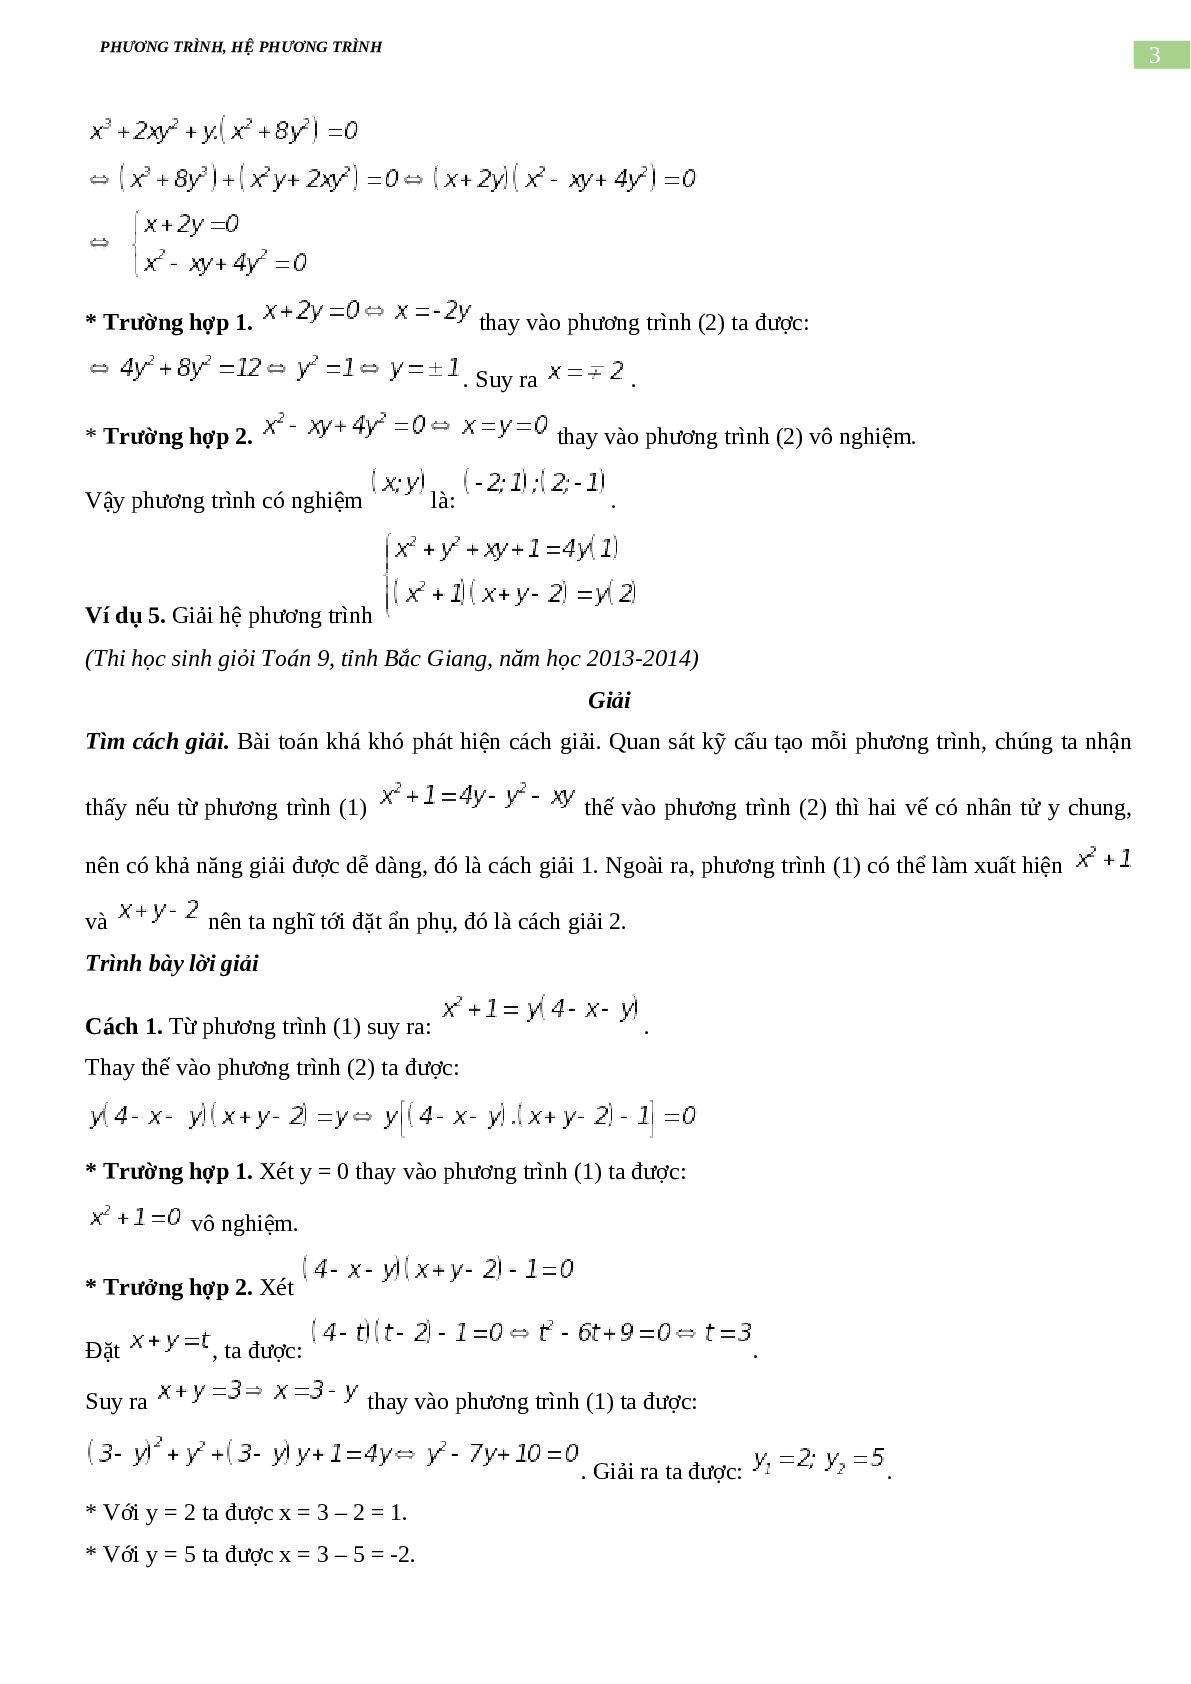 Bài tập về phương trình, hệ phương trình, bất phương trình không mẫu mực có đáp án, chọn lọc (trang 3)